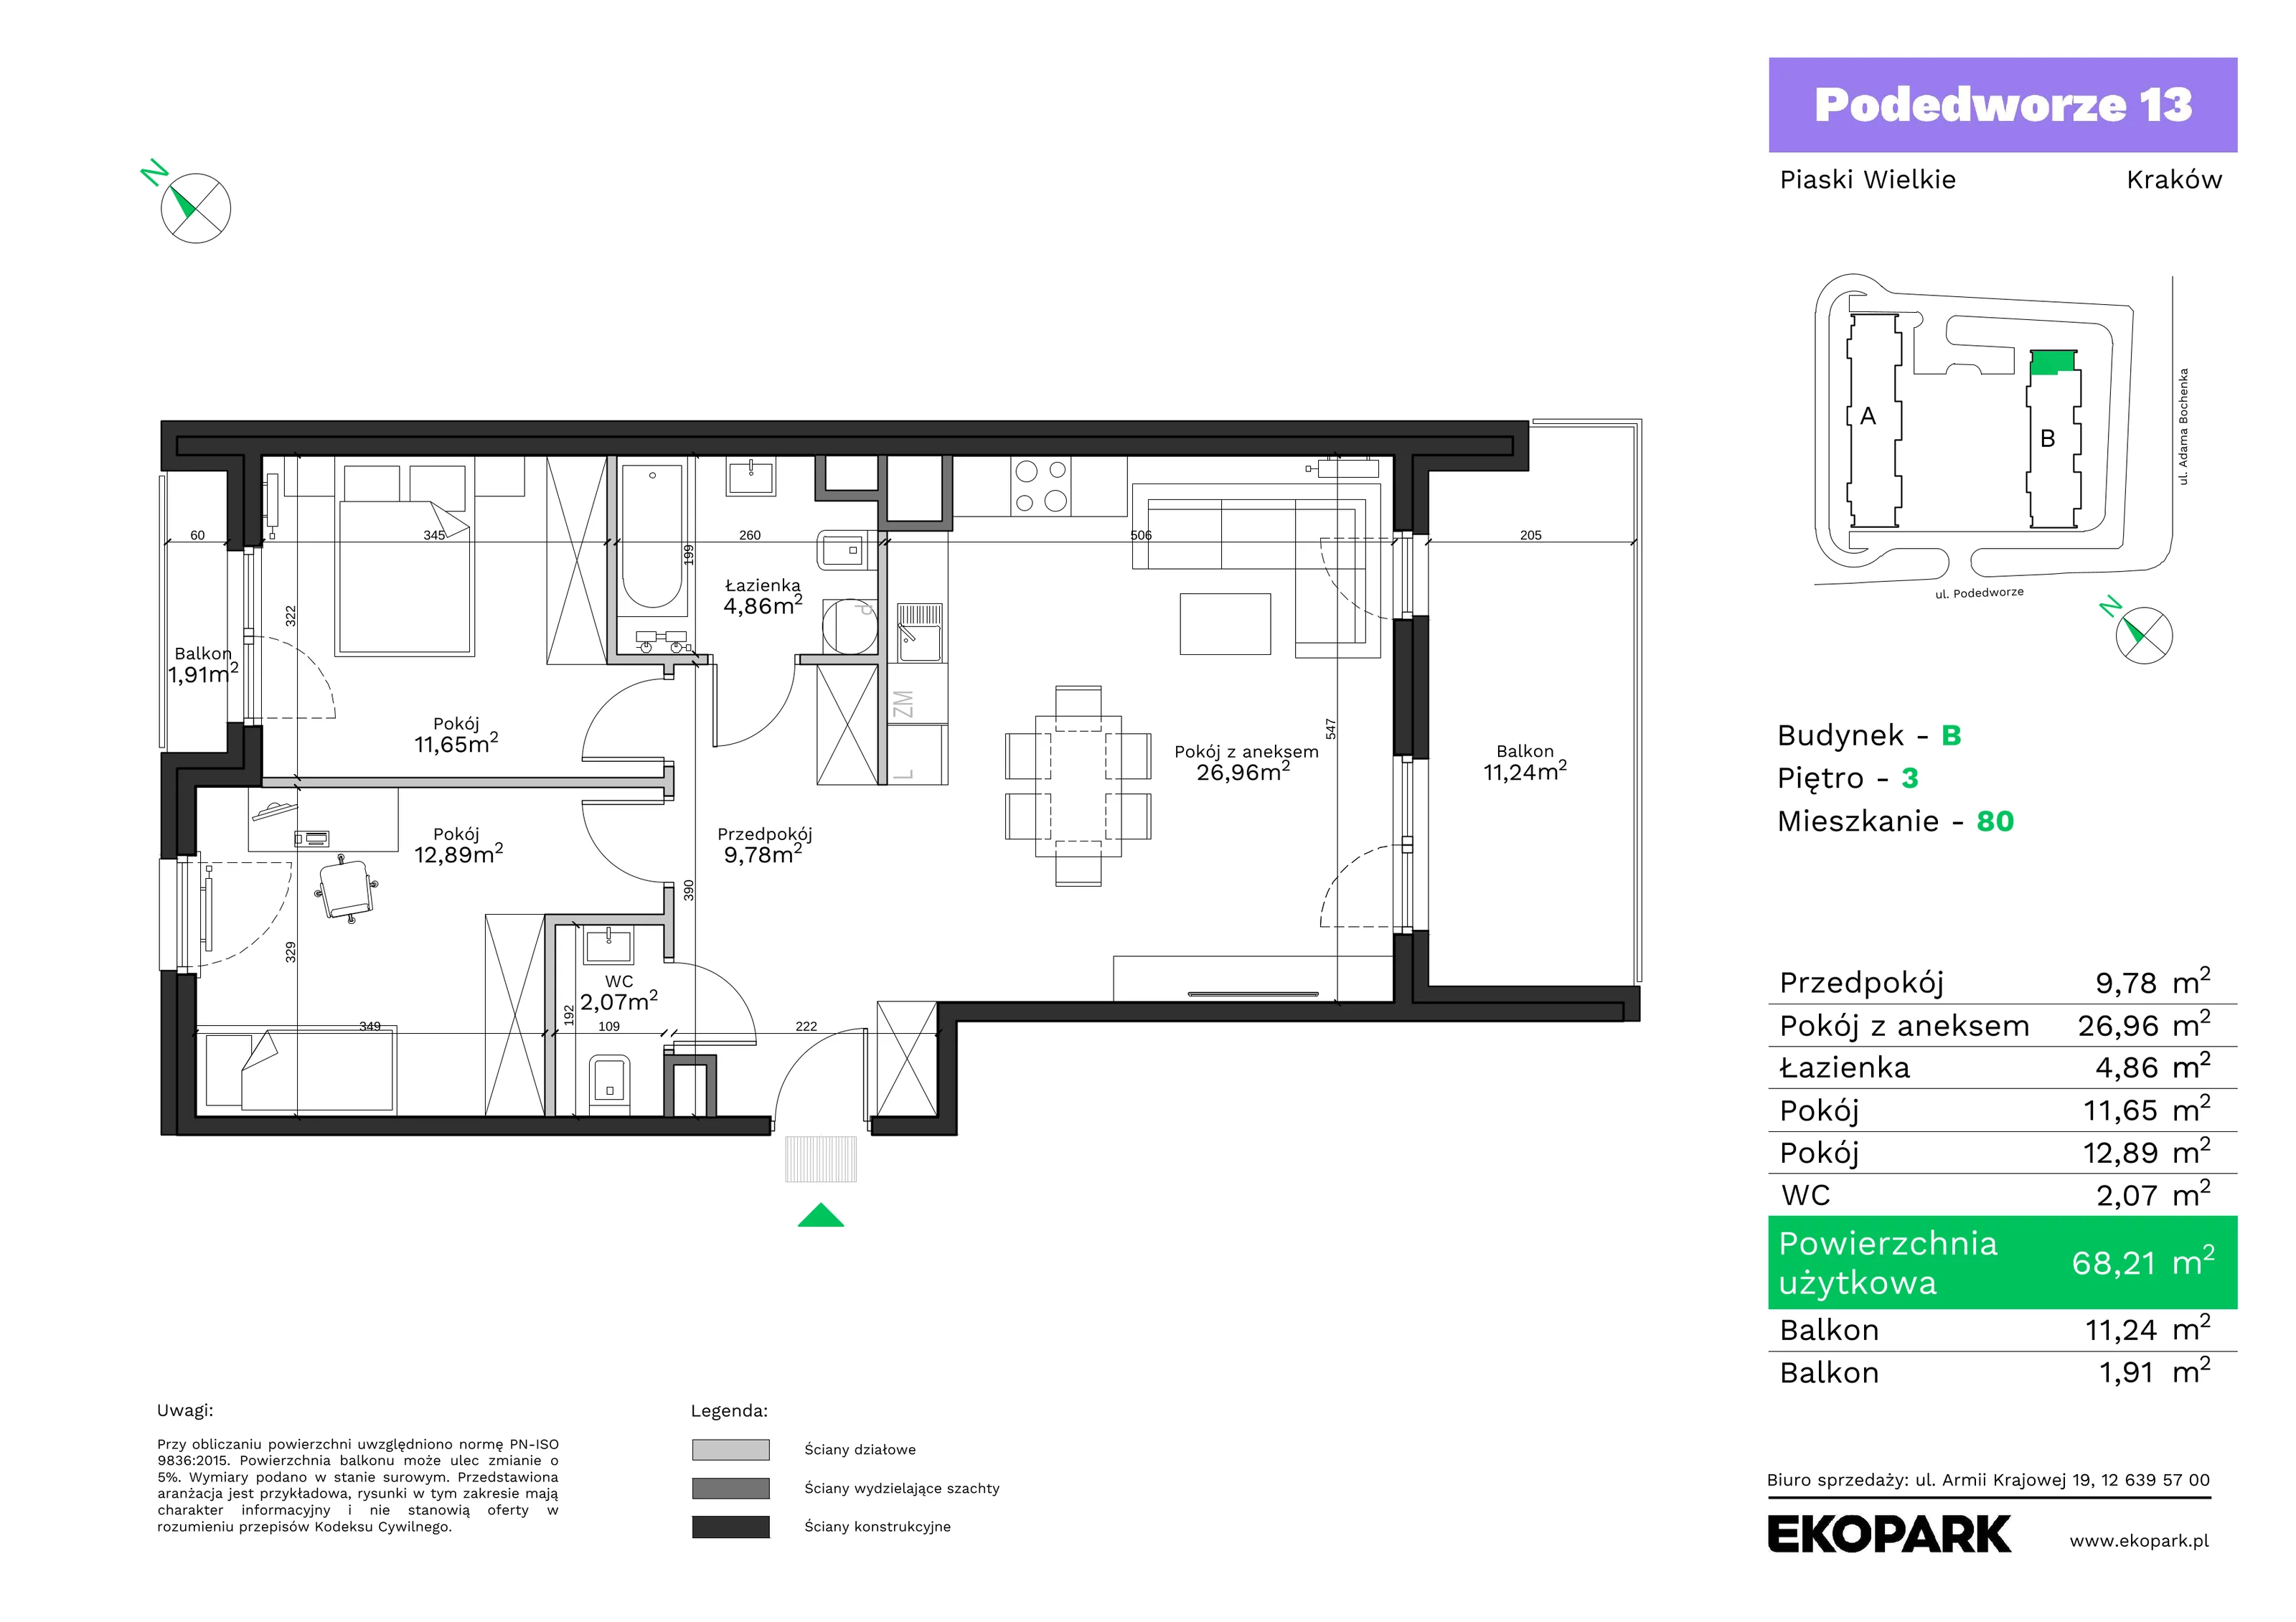 Mieszkanie 68,21 m², piętro 3, oferta nr B80, Podedworze 13, Kraków, Podgórze Duchackie, Piaski Wielkie, ul. Podedworze 13